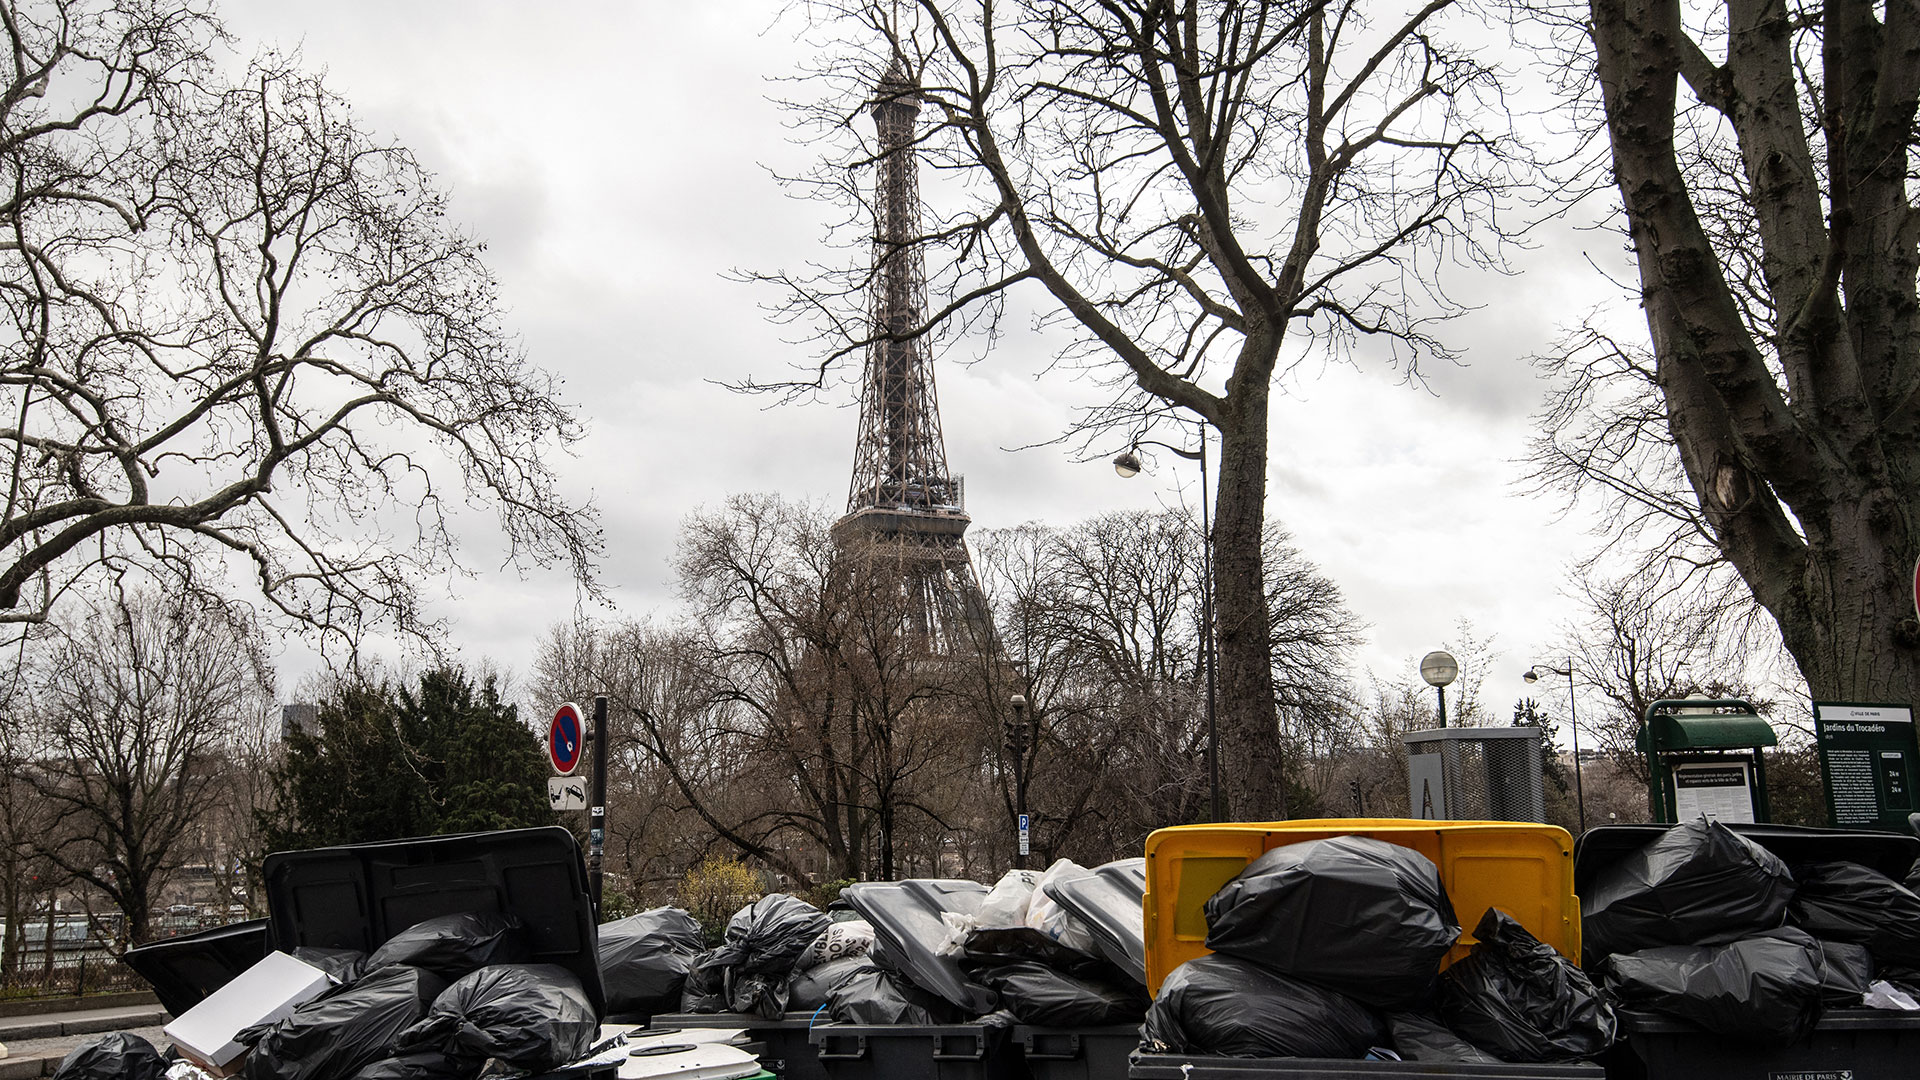 Video: montañas de basura opacan atractivos de París tras huelga por reforma de pensiones